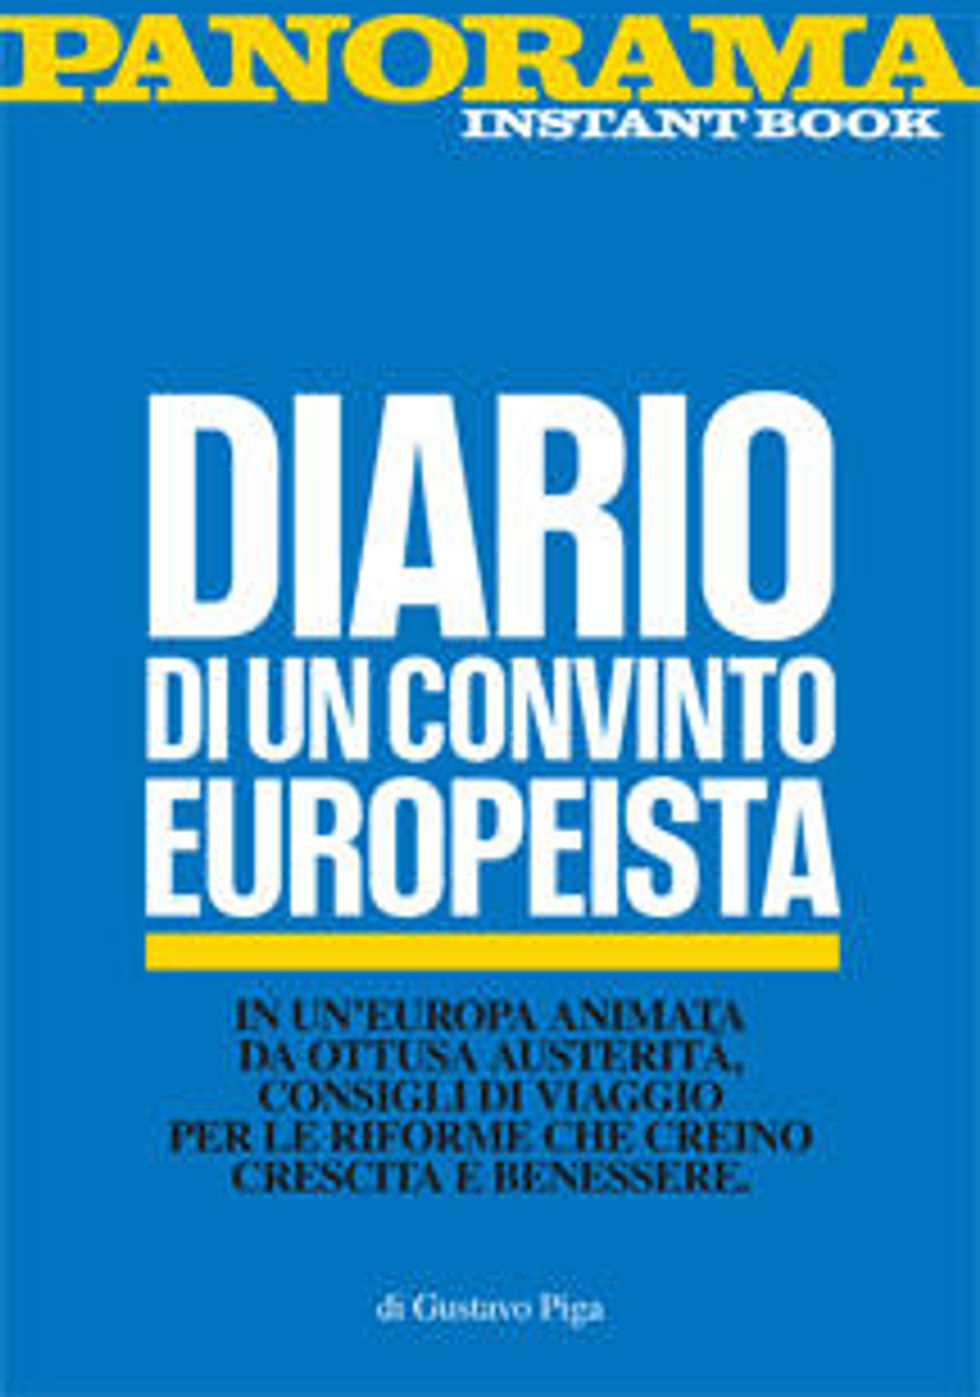 Diario di un convinto europeista - Instant book